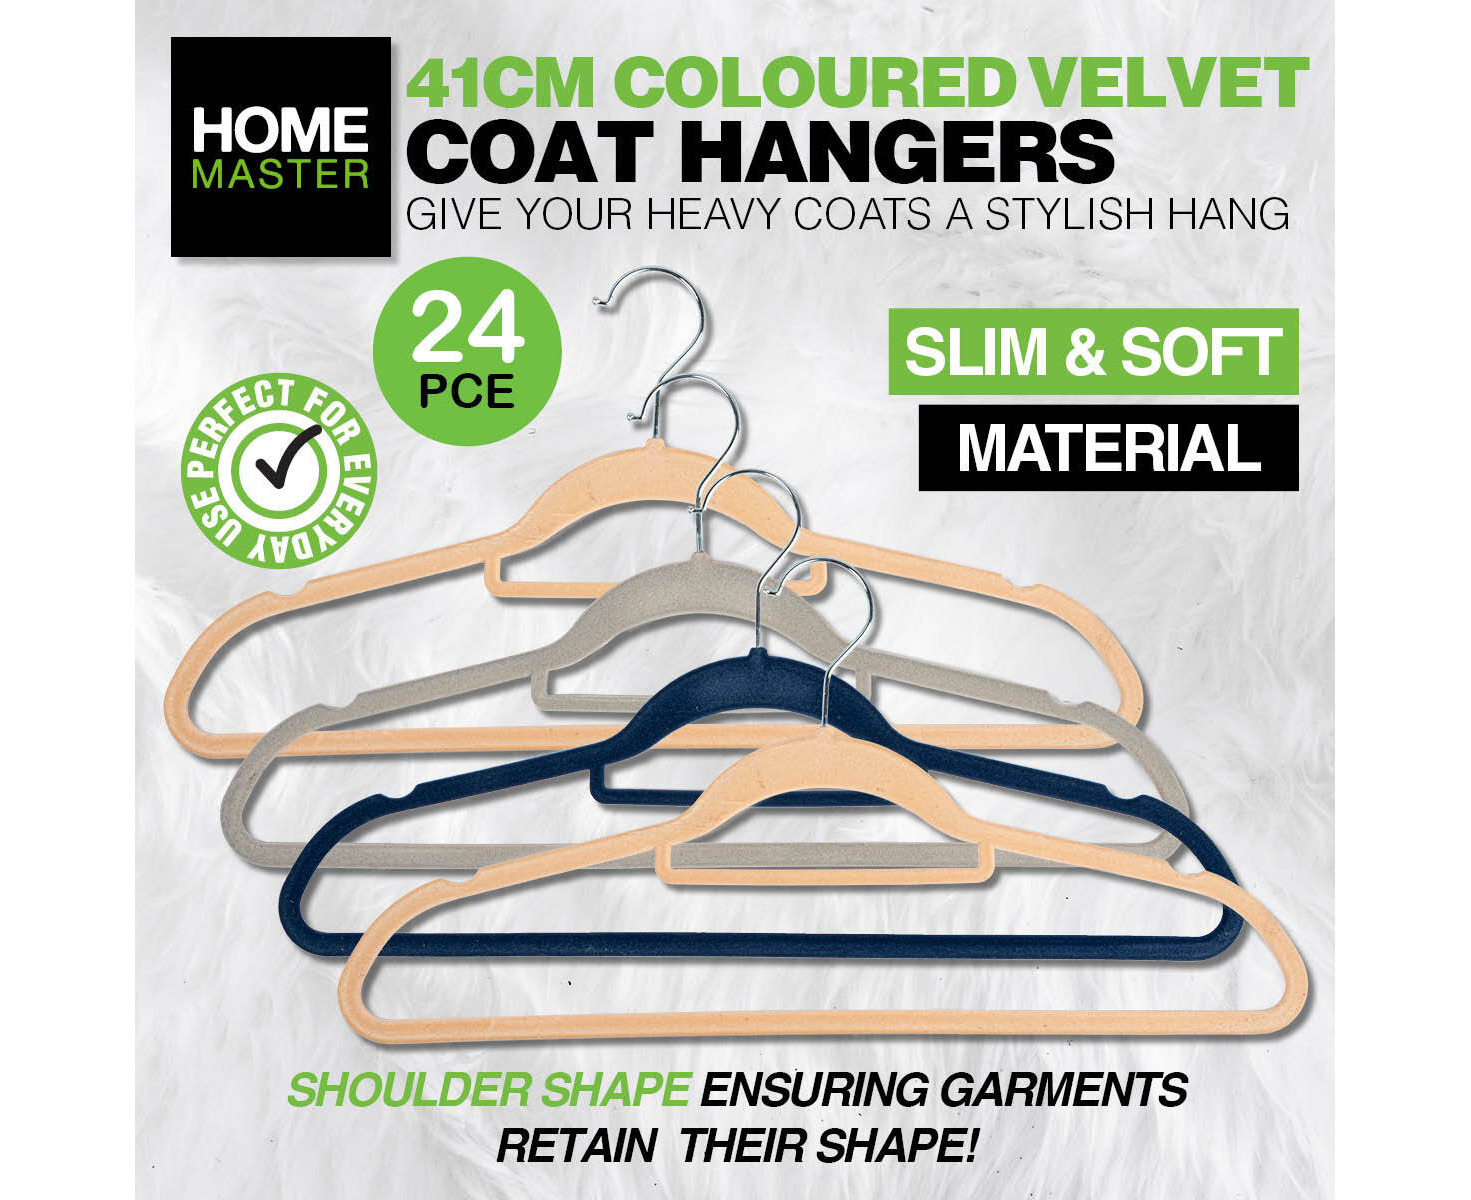 Home Master 24PCE Coat Hanger Velvet Coloured Shirts Blouses Jackets  Non-Slip